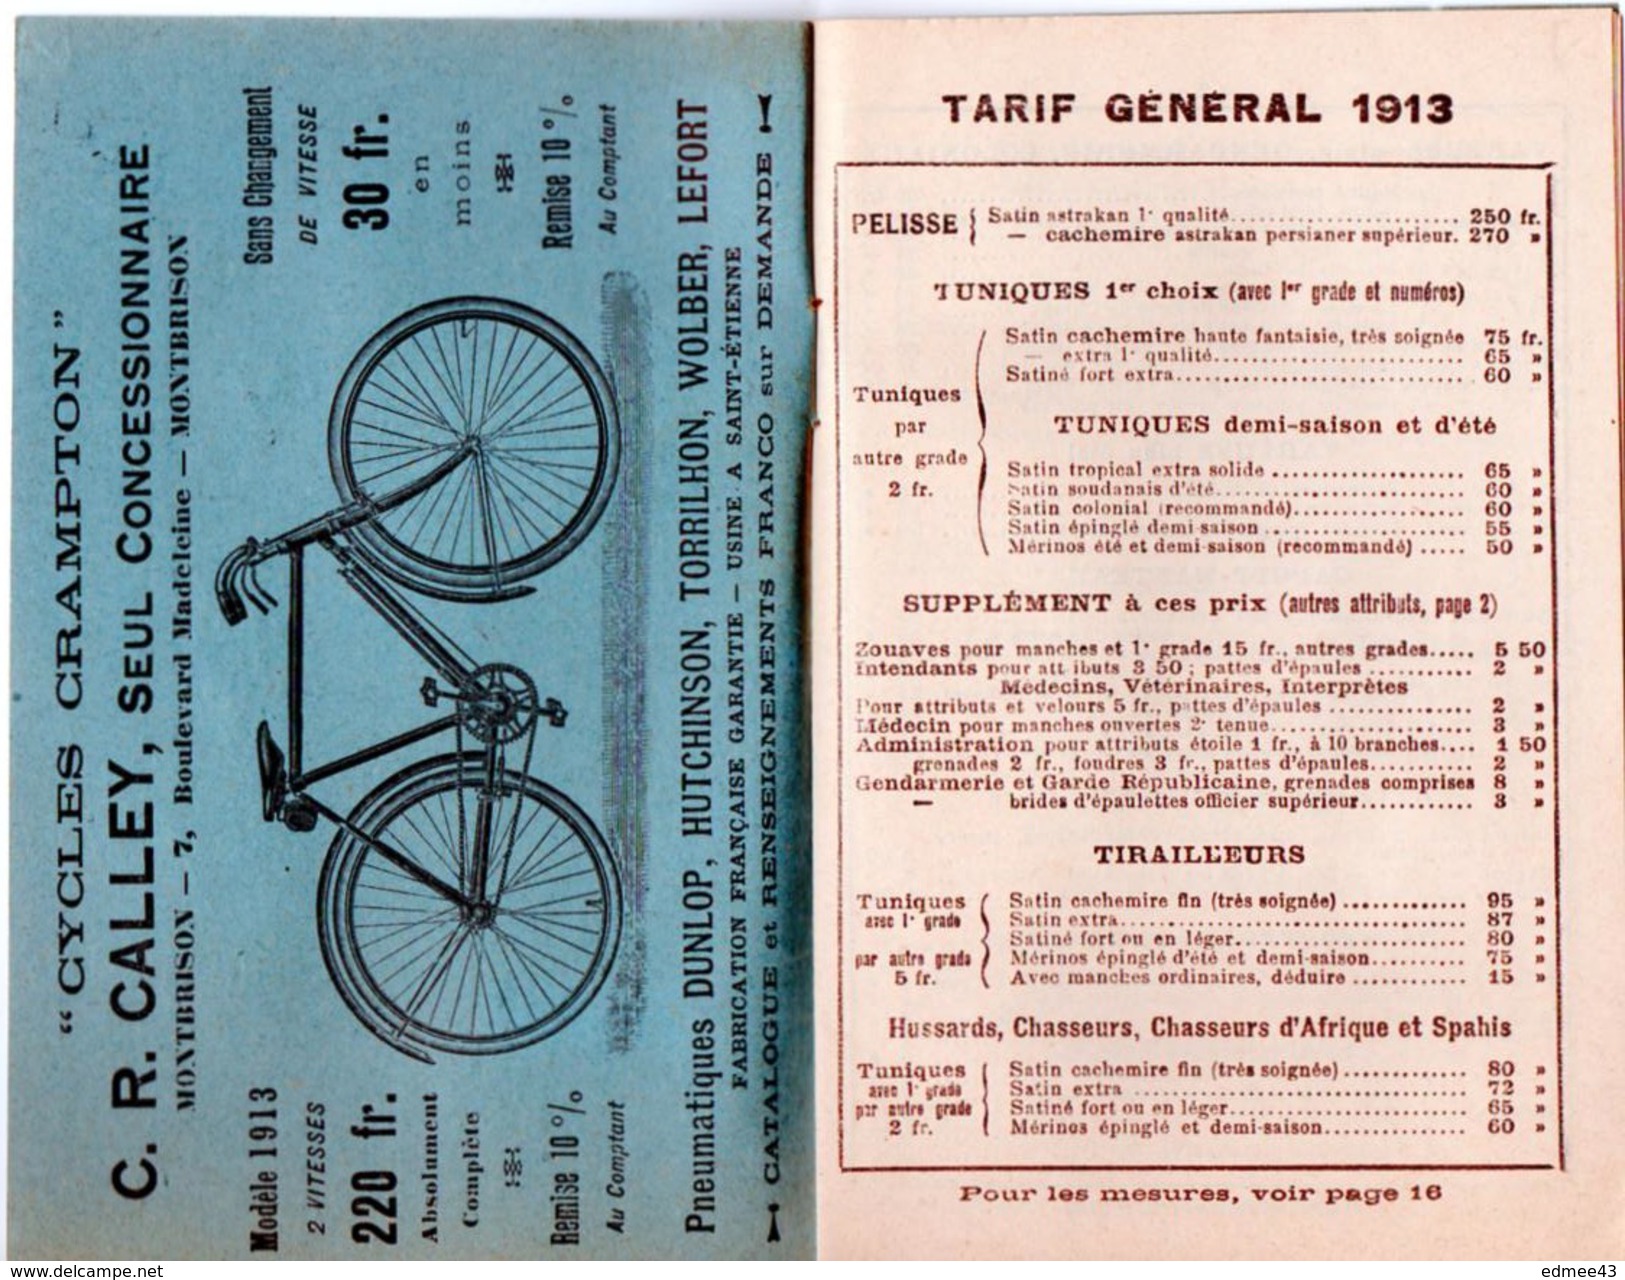 Rare Petit Catalogue (tarifs) G. Gonnard, Fabrique De Passementeries Militaires, Paris, 1913 - France